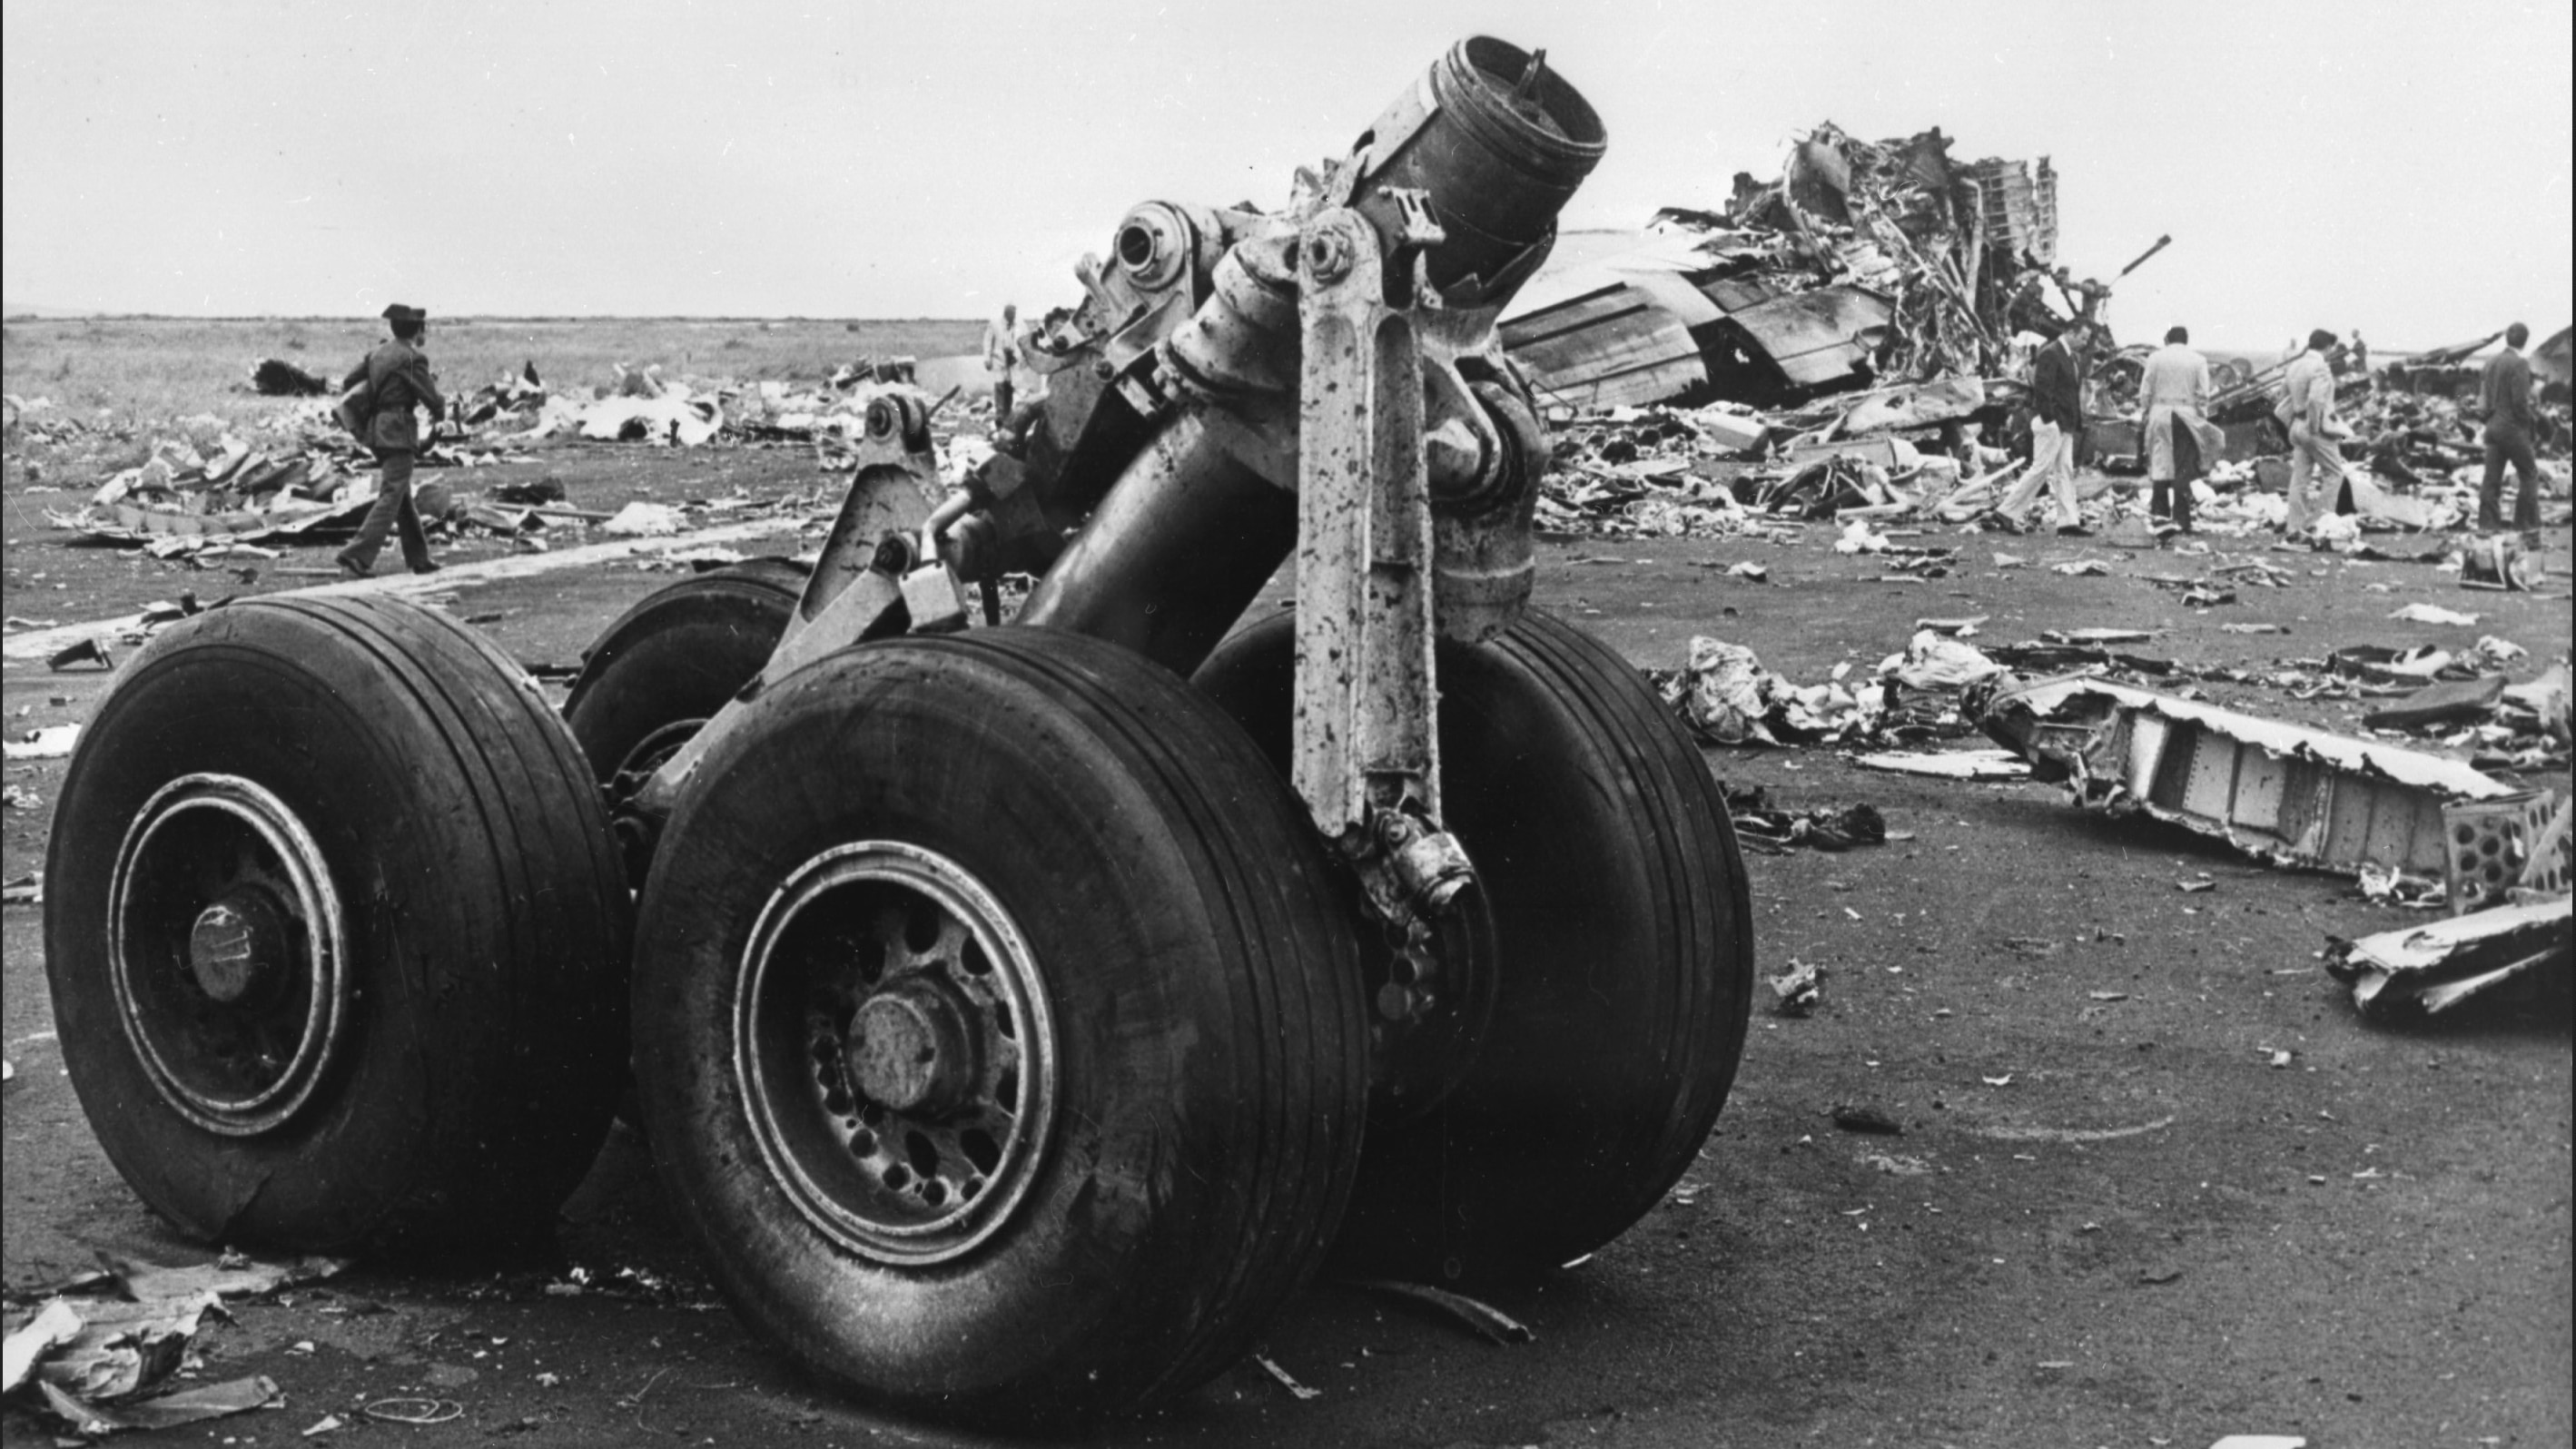 À Tenerife en 1977, l'accident aérien le plus tragique de l'histoire